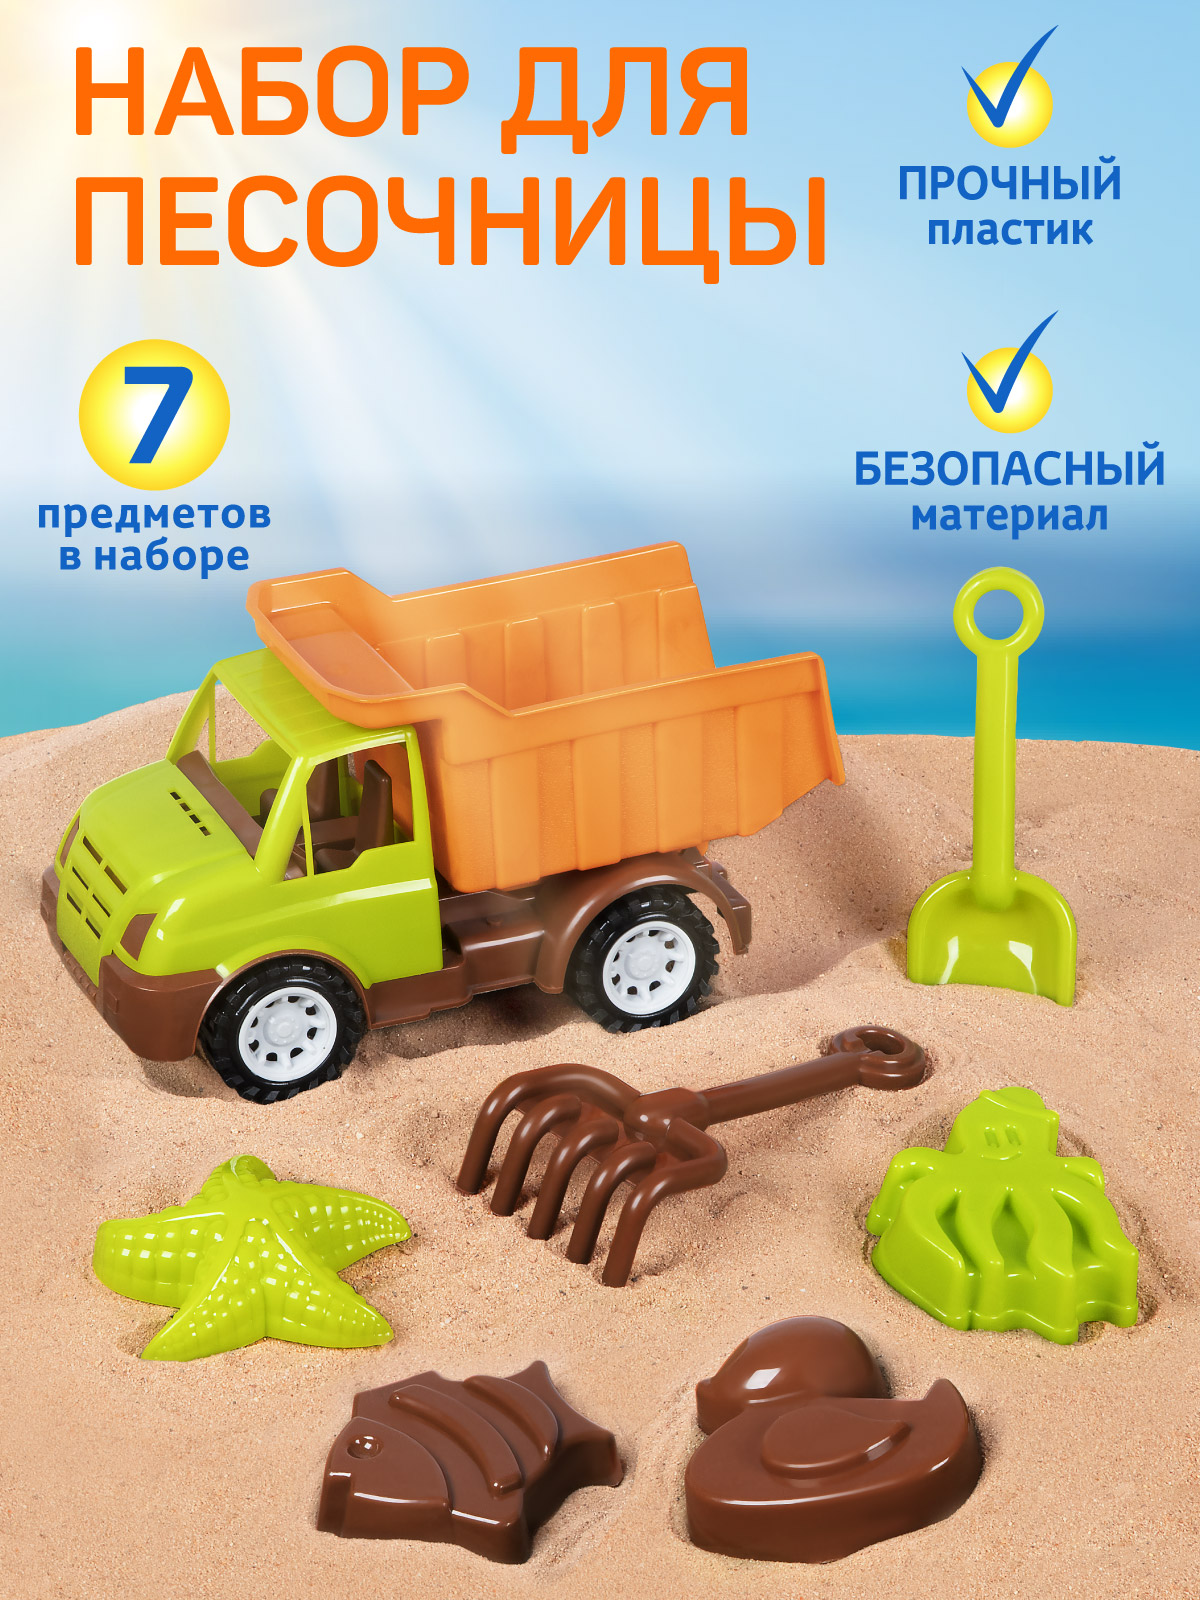 Набор для игры в песочнице Машинка грузовик ТМ Компания Друзей, JB5300533